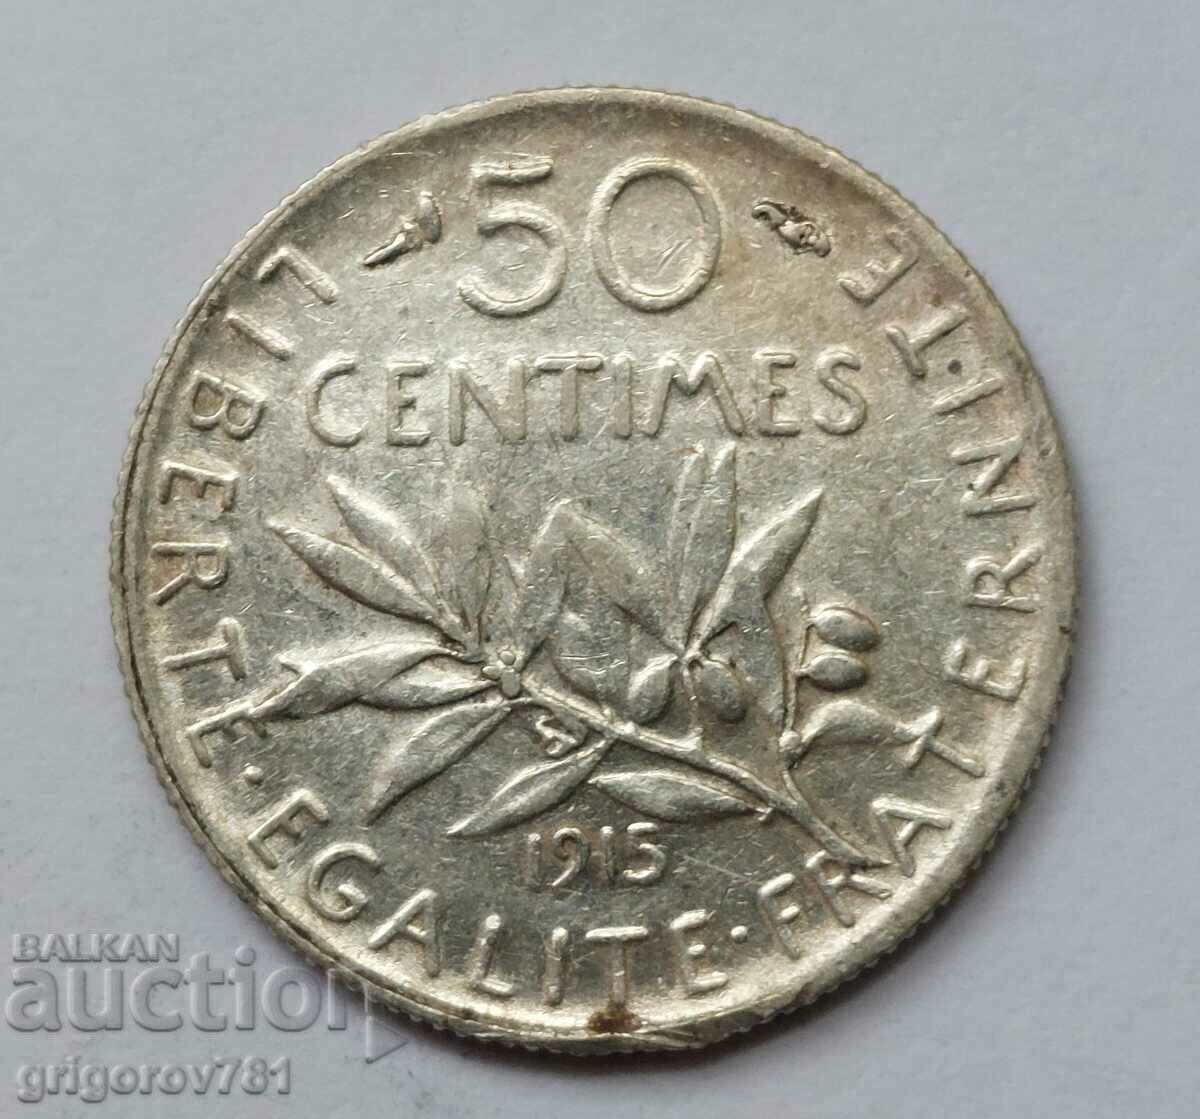 Ασημένιο 50 εκατοστά Γαλλία 1915 - ασημένιο νόμισμα #69